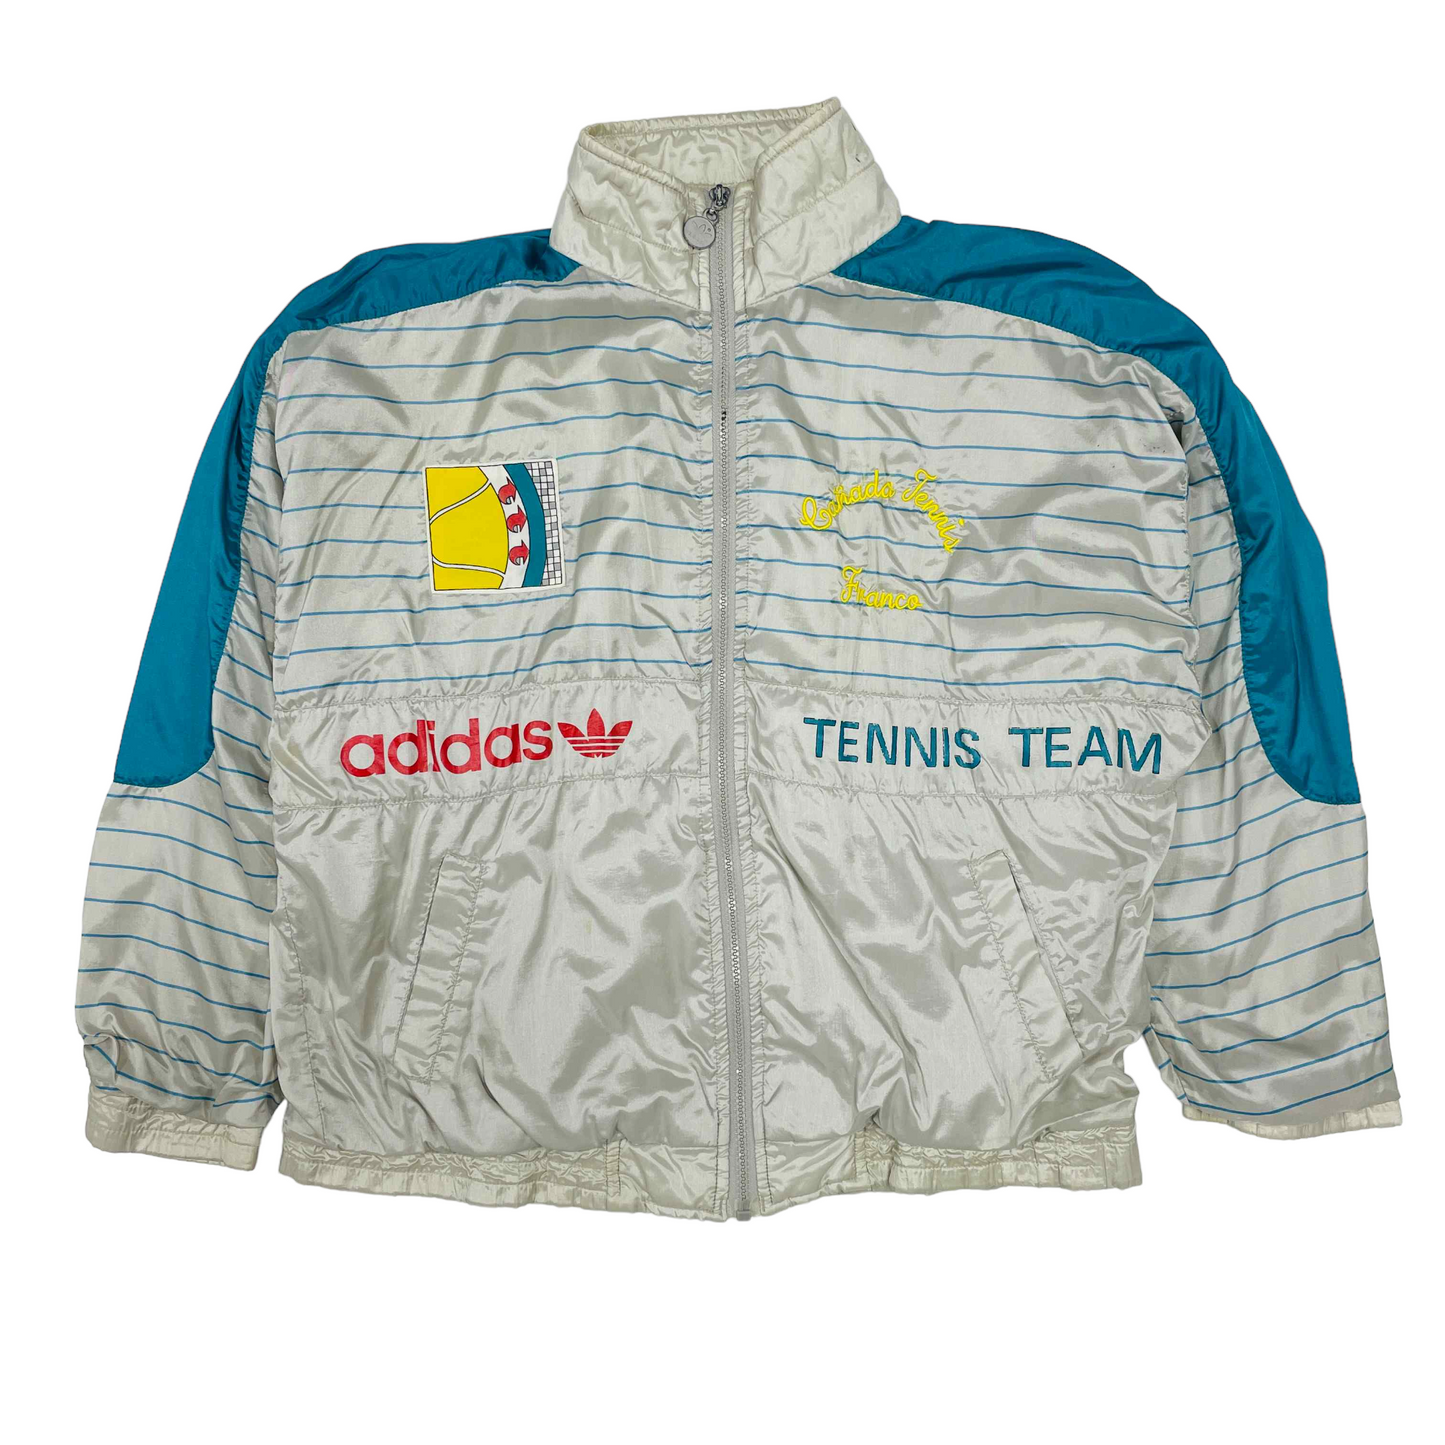 Adidas ATP Tennis Team Track Jacket - Large – Vintage Standards